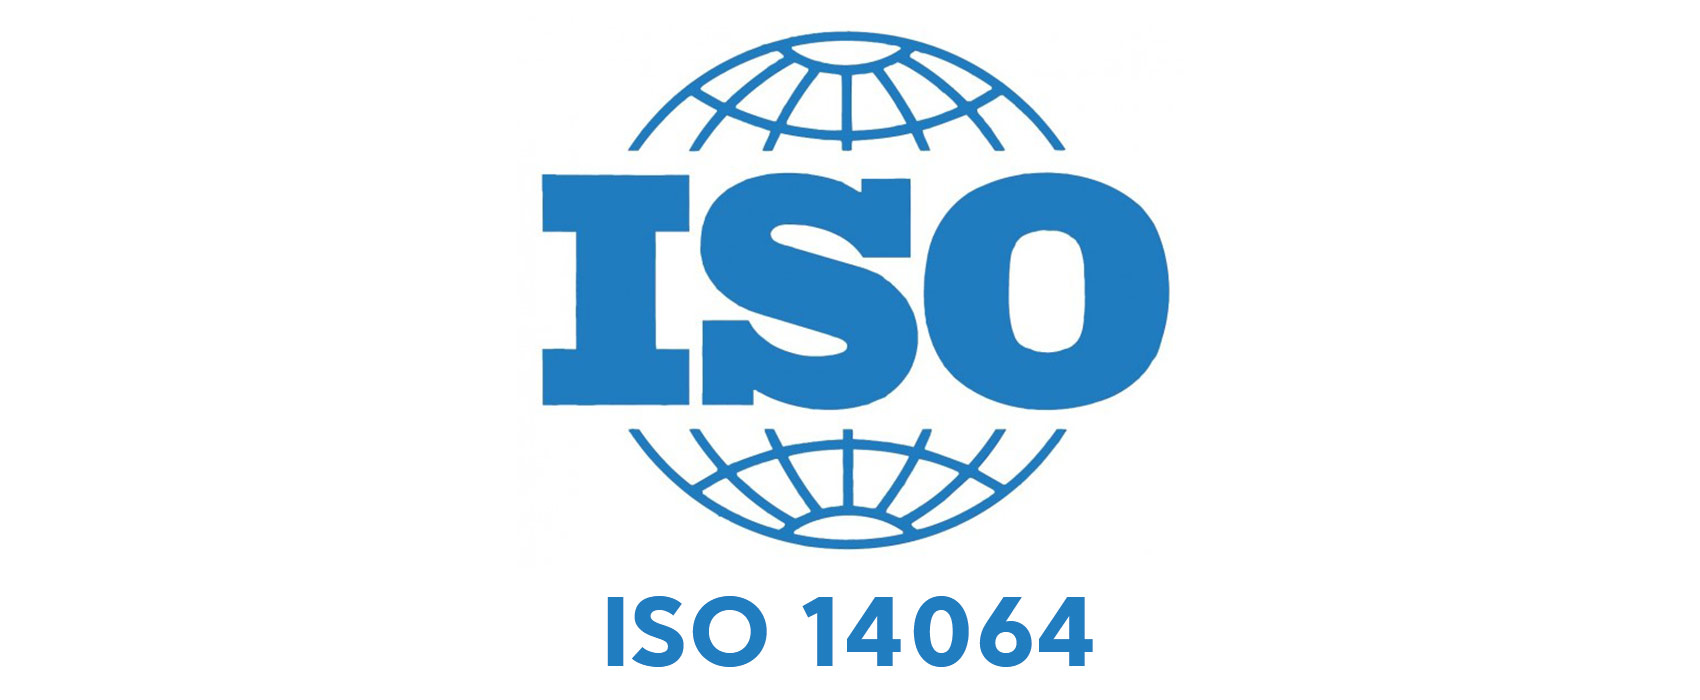 ISO 14064-1 là tiêu chuẩn để đo lường và báo cáo lượng khí nhà kính